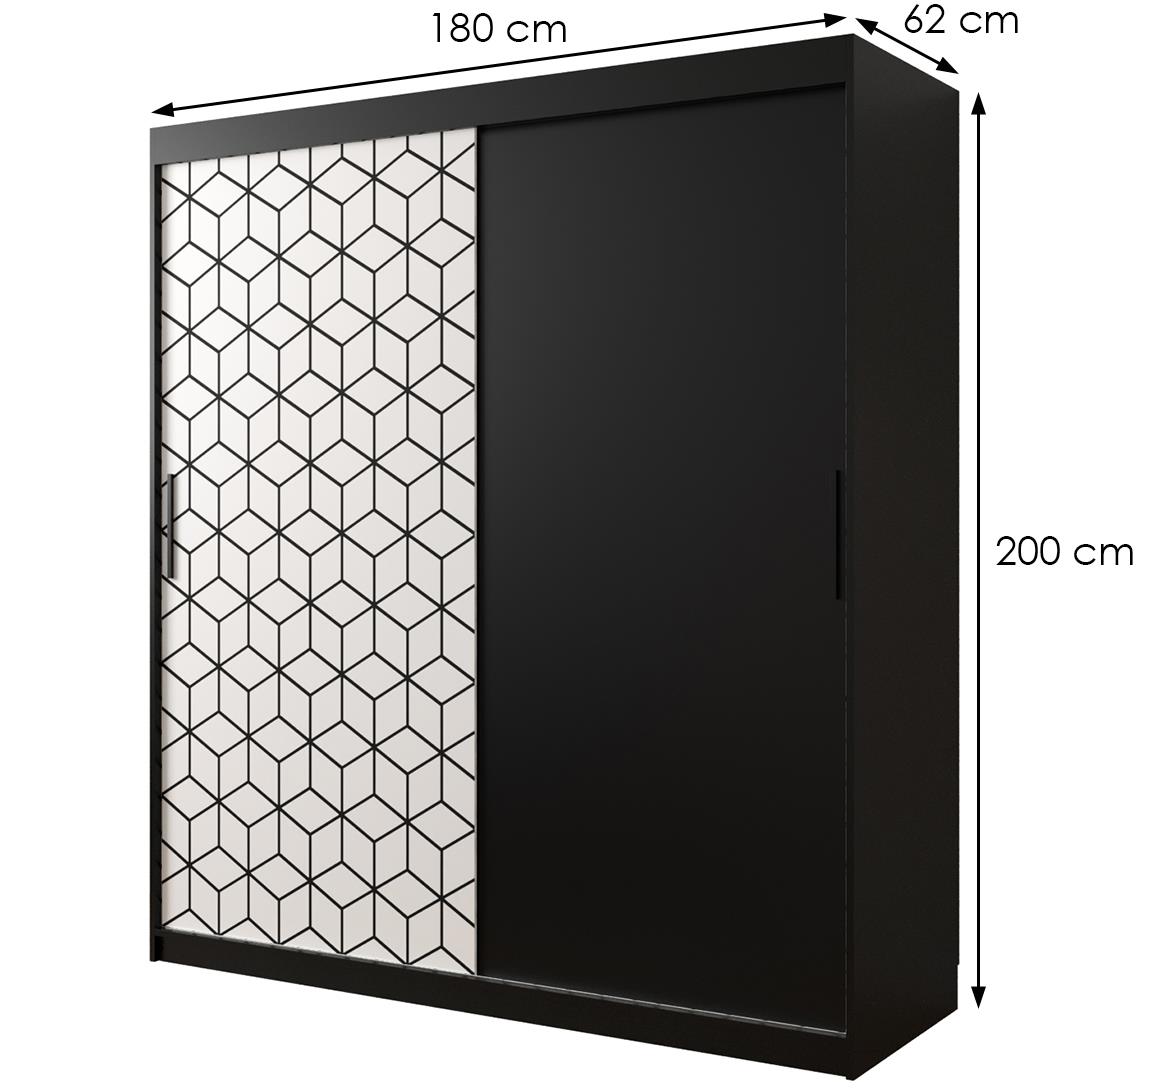 Hexagon ormar 2 vrata 180x62x200 cm crno/beli